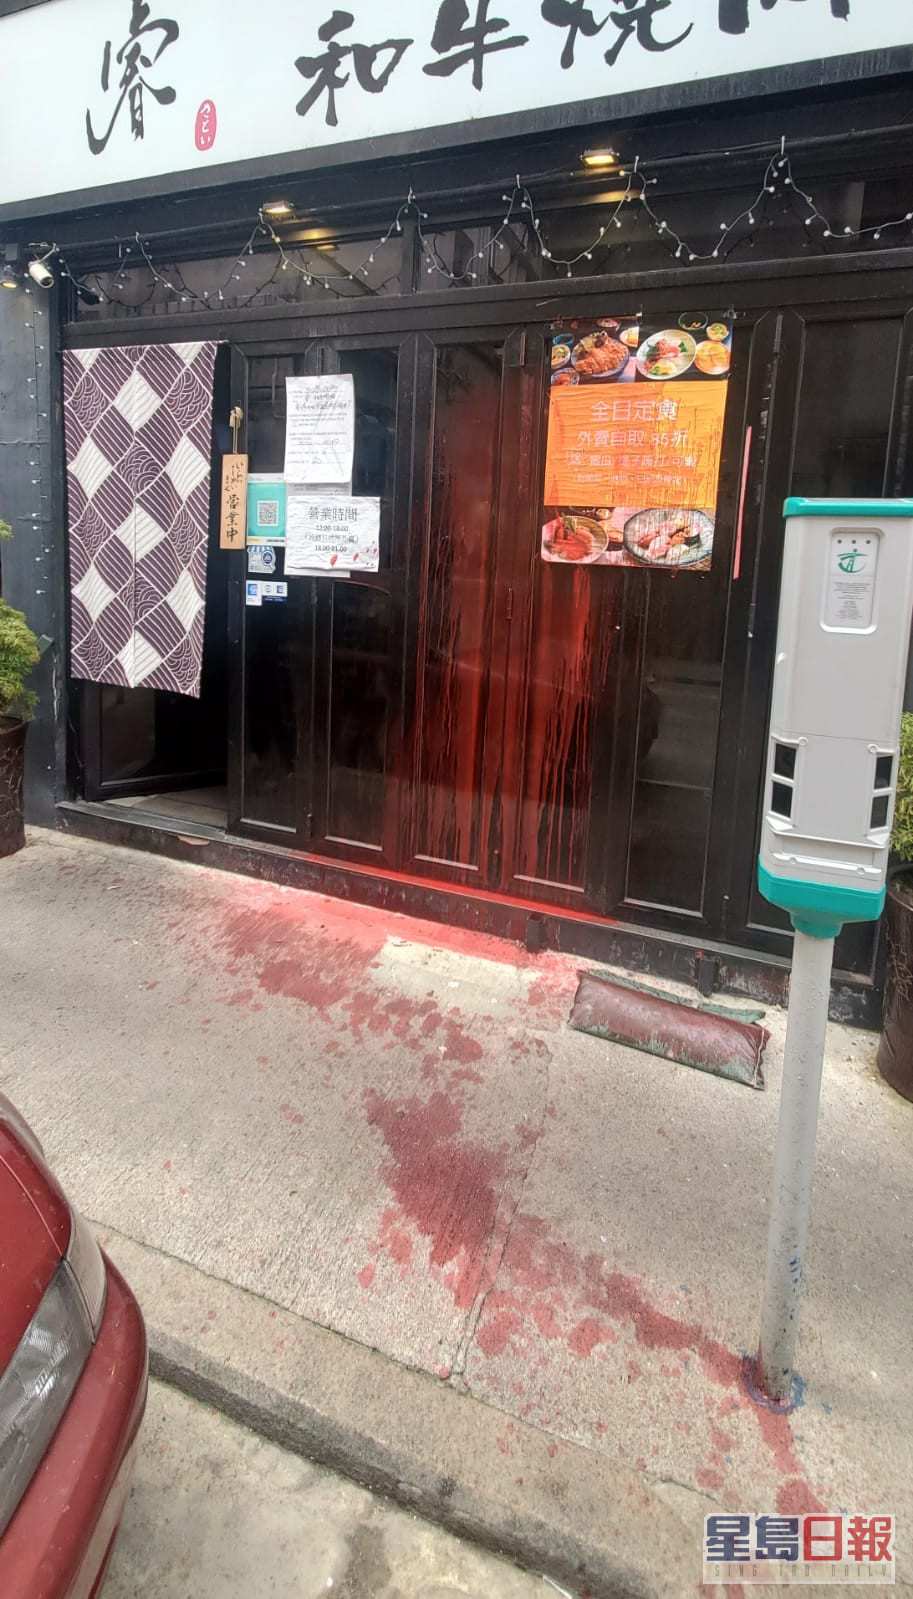 餐厅玻璃门被淋红油刑毁。杨伟亨摄